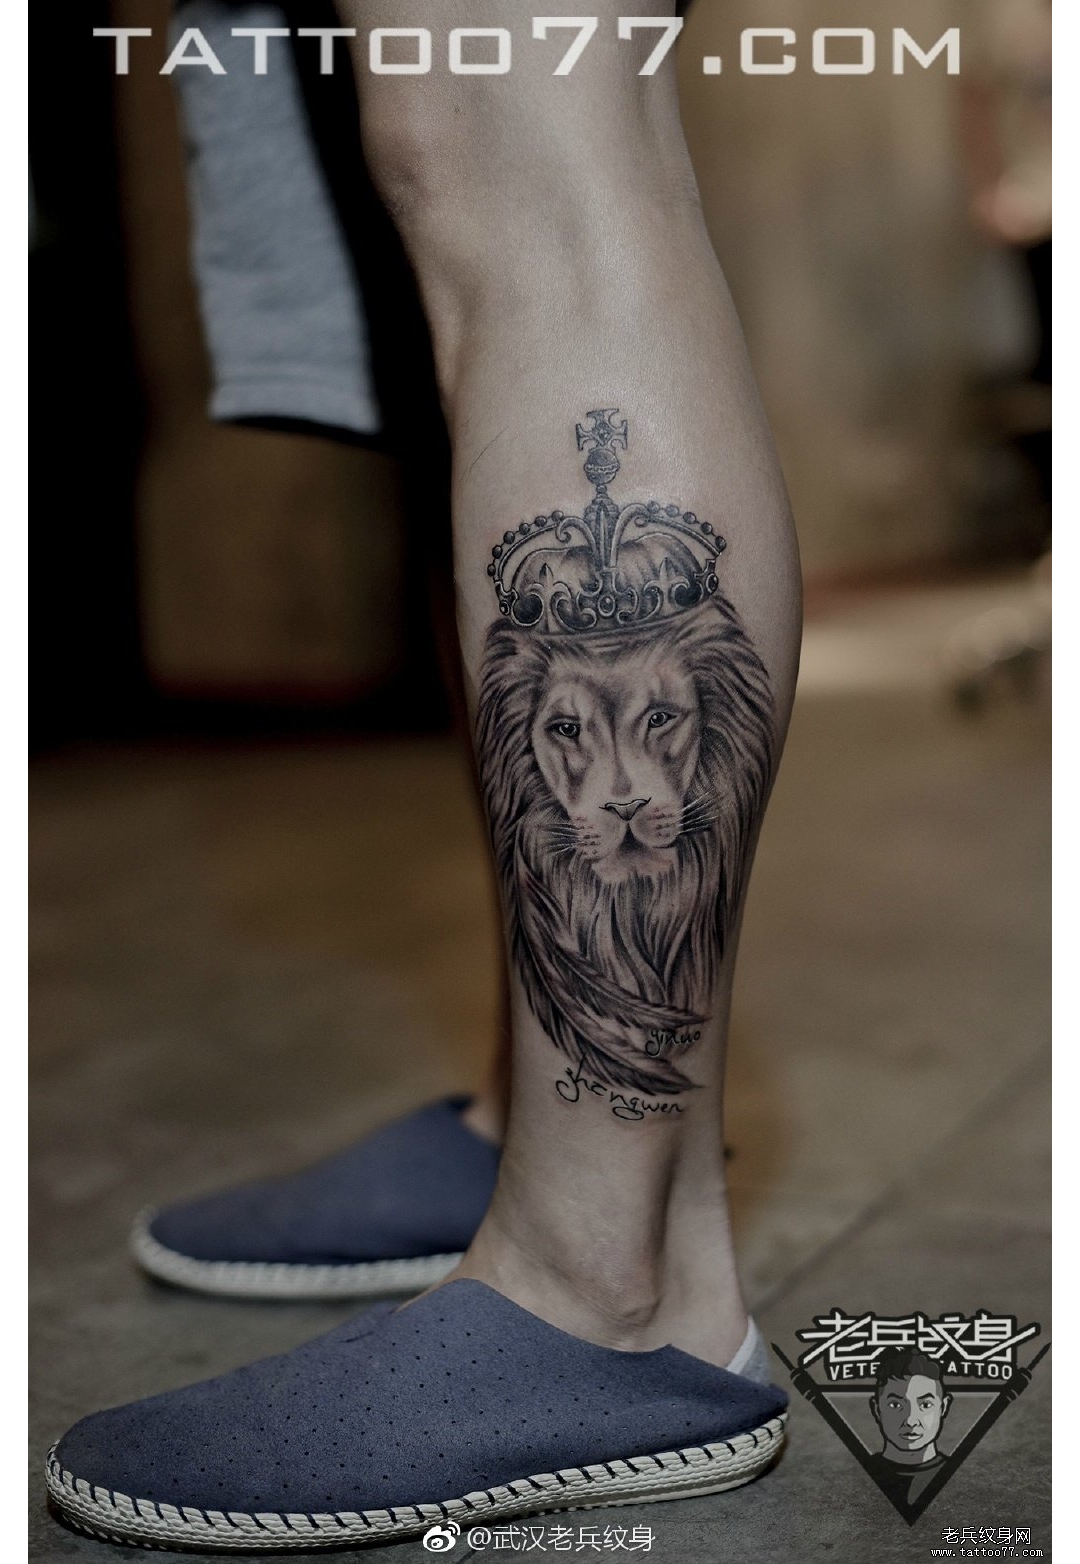 腿部狮子皇冠纹身图案作品